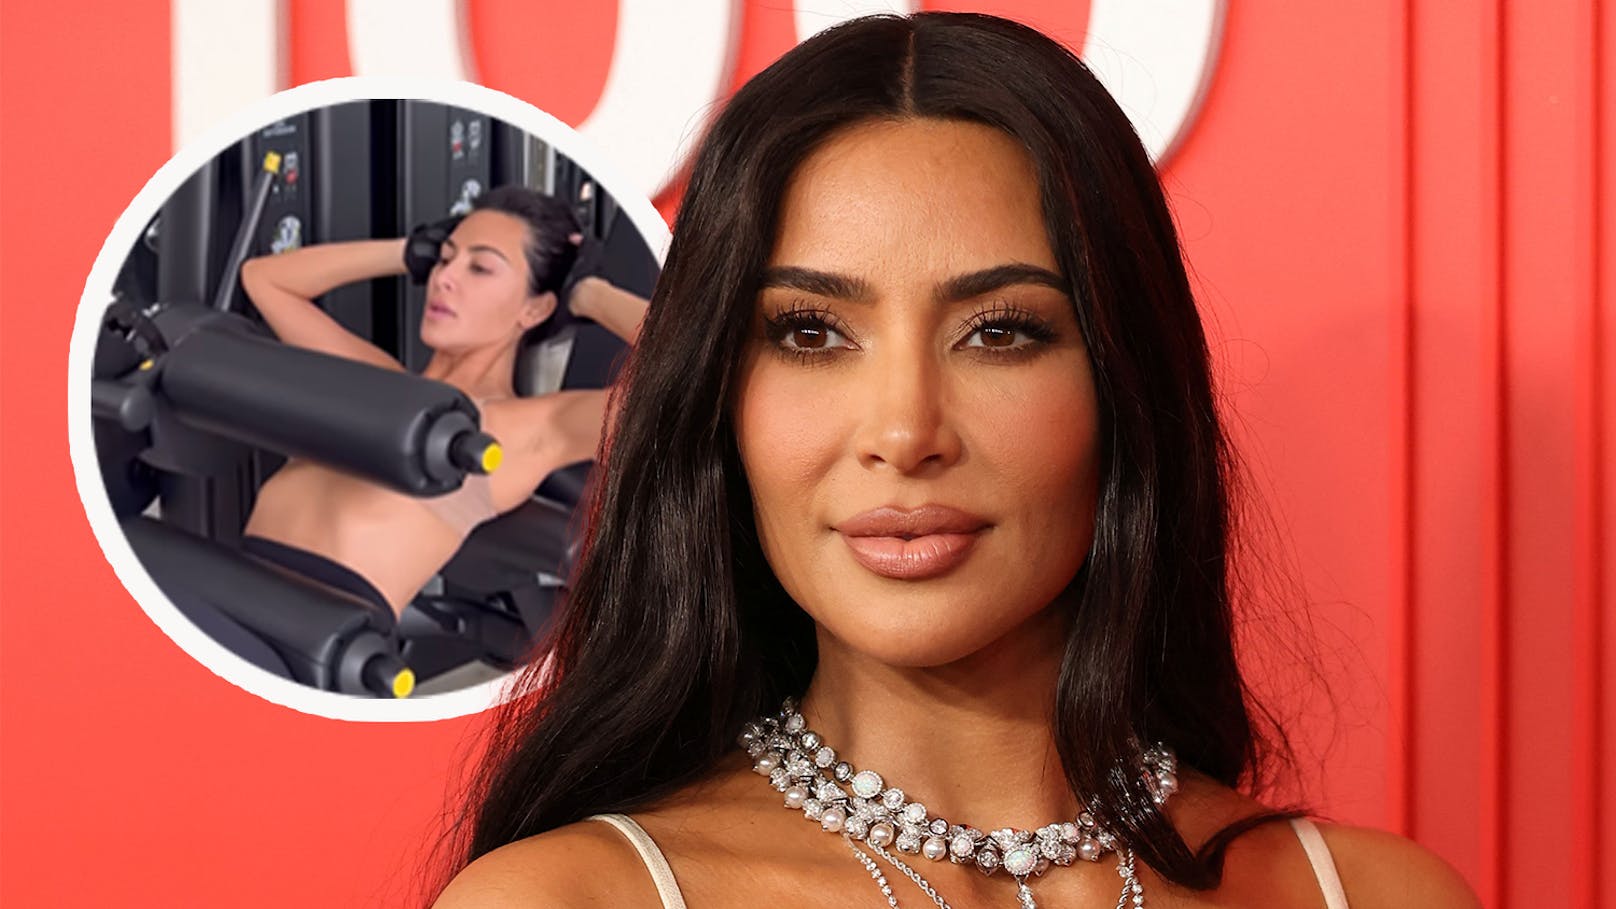 "Oben ohne": Trainiert Kim Kardashian etwa ohne Top?